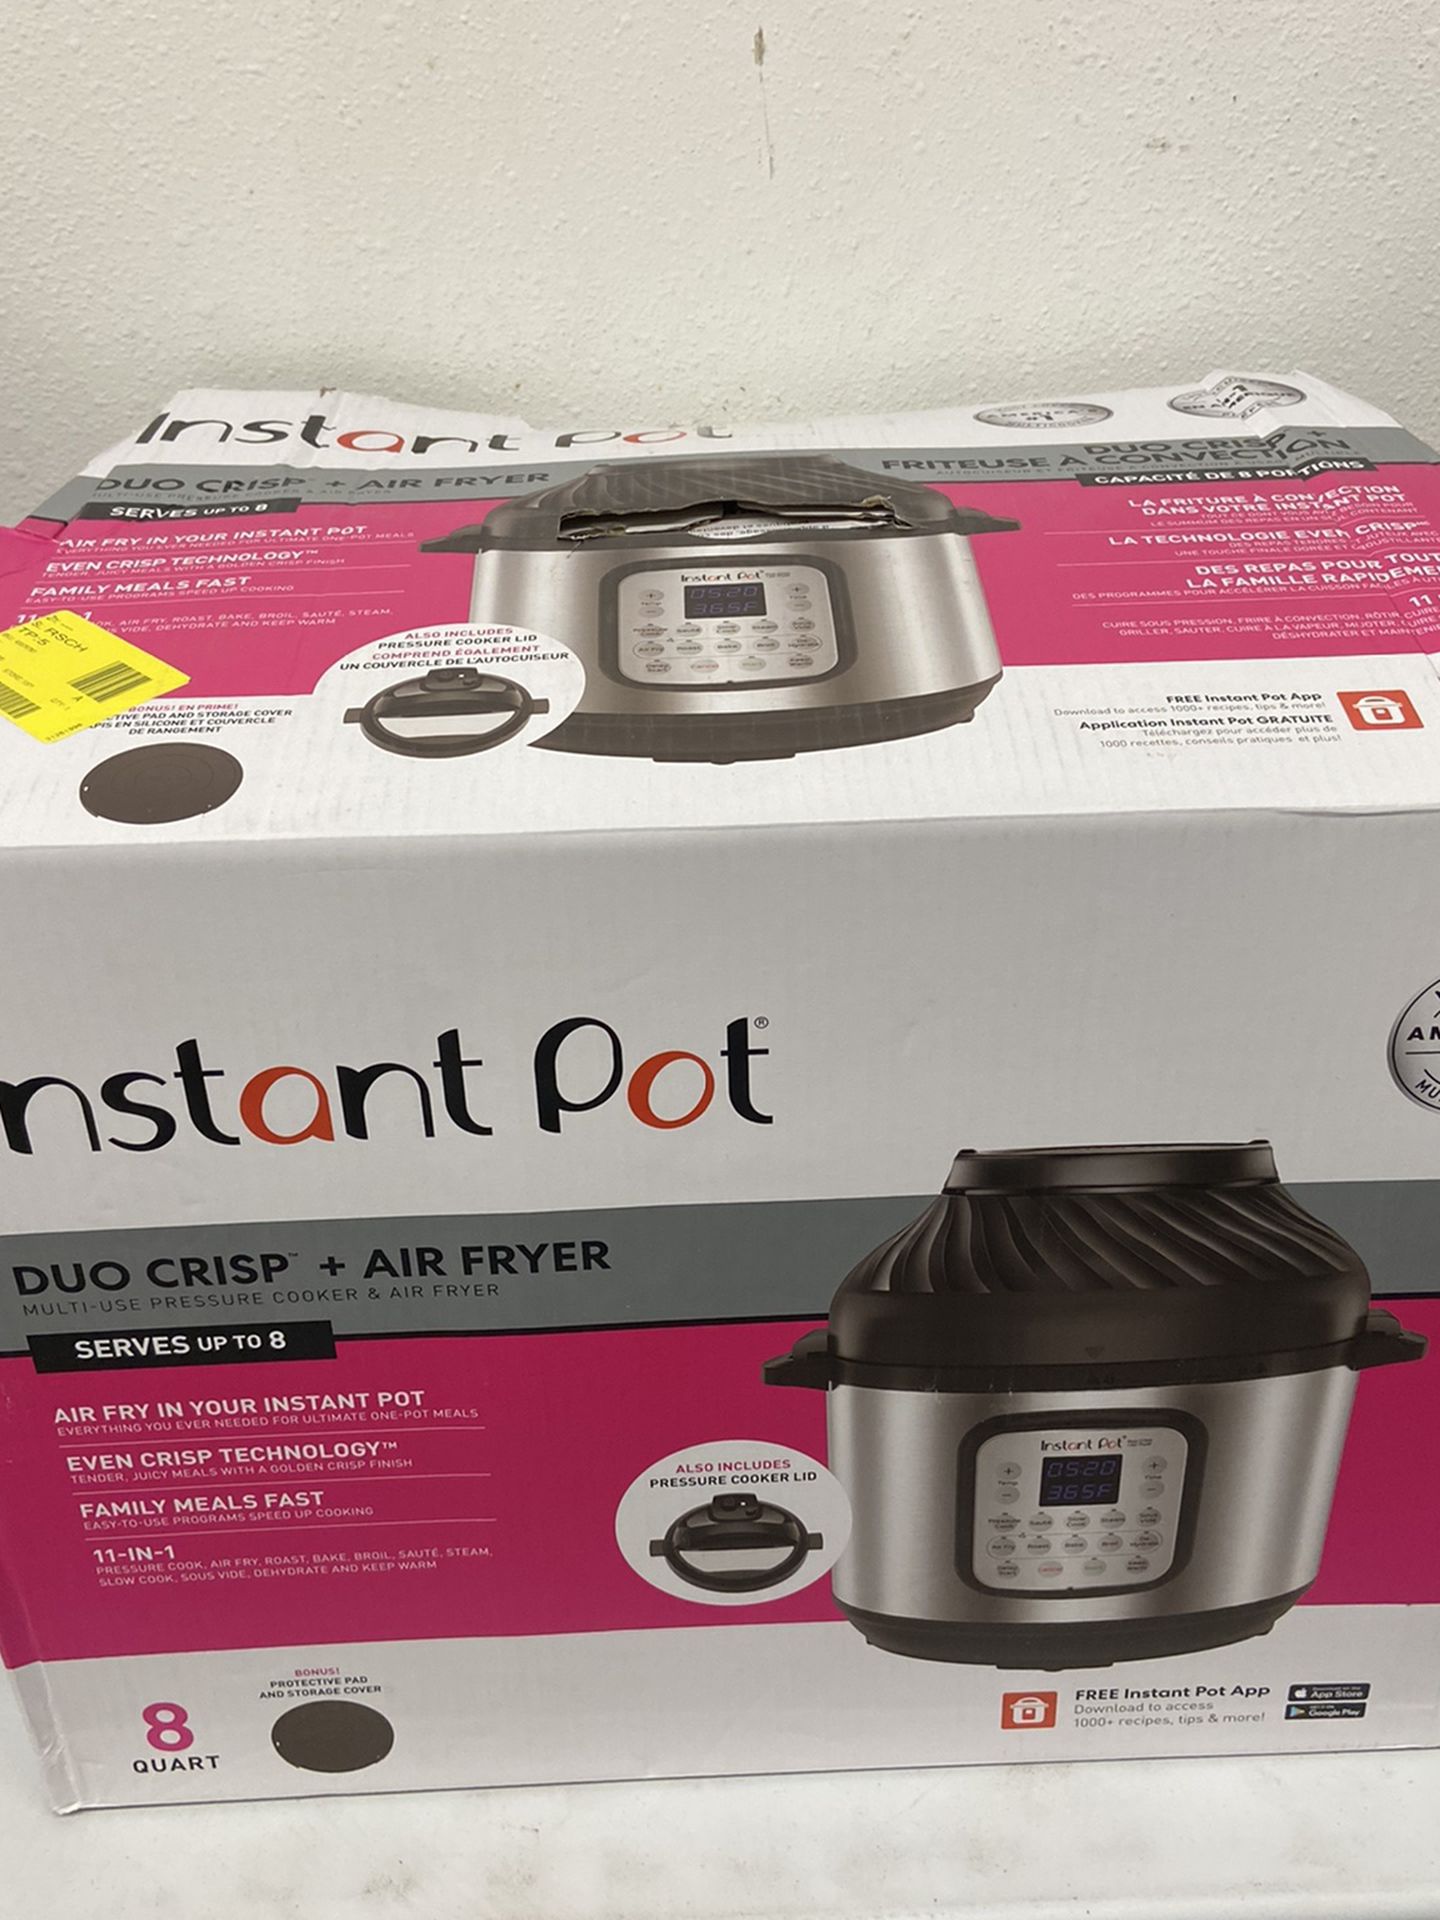 Instant Pot 8 Quart Duo Crisp + Air Fryer Brand New